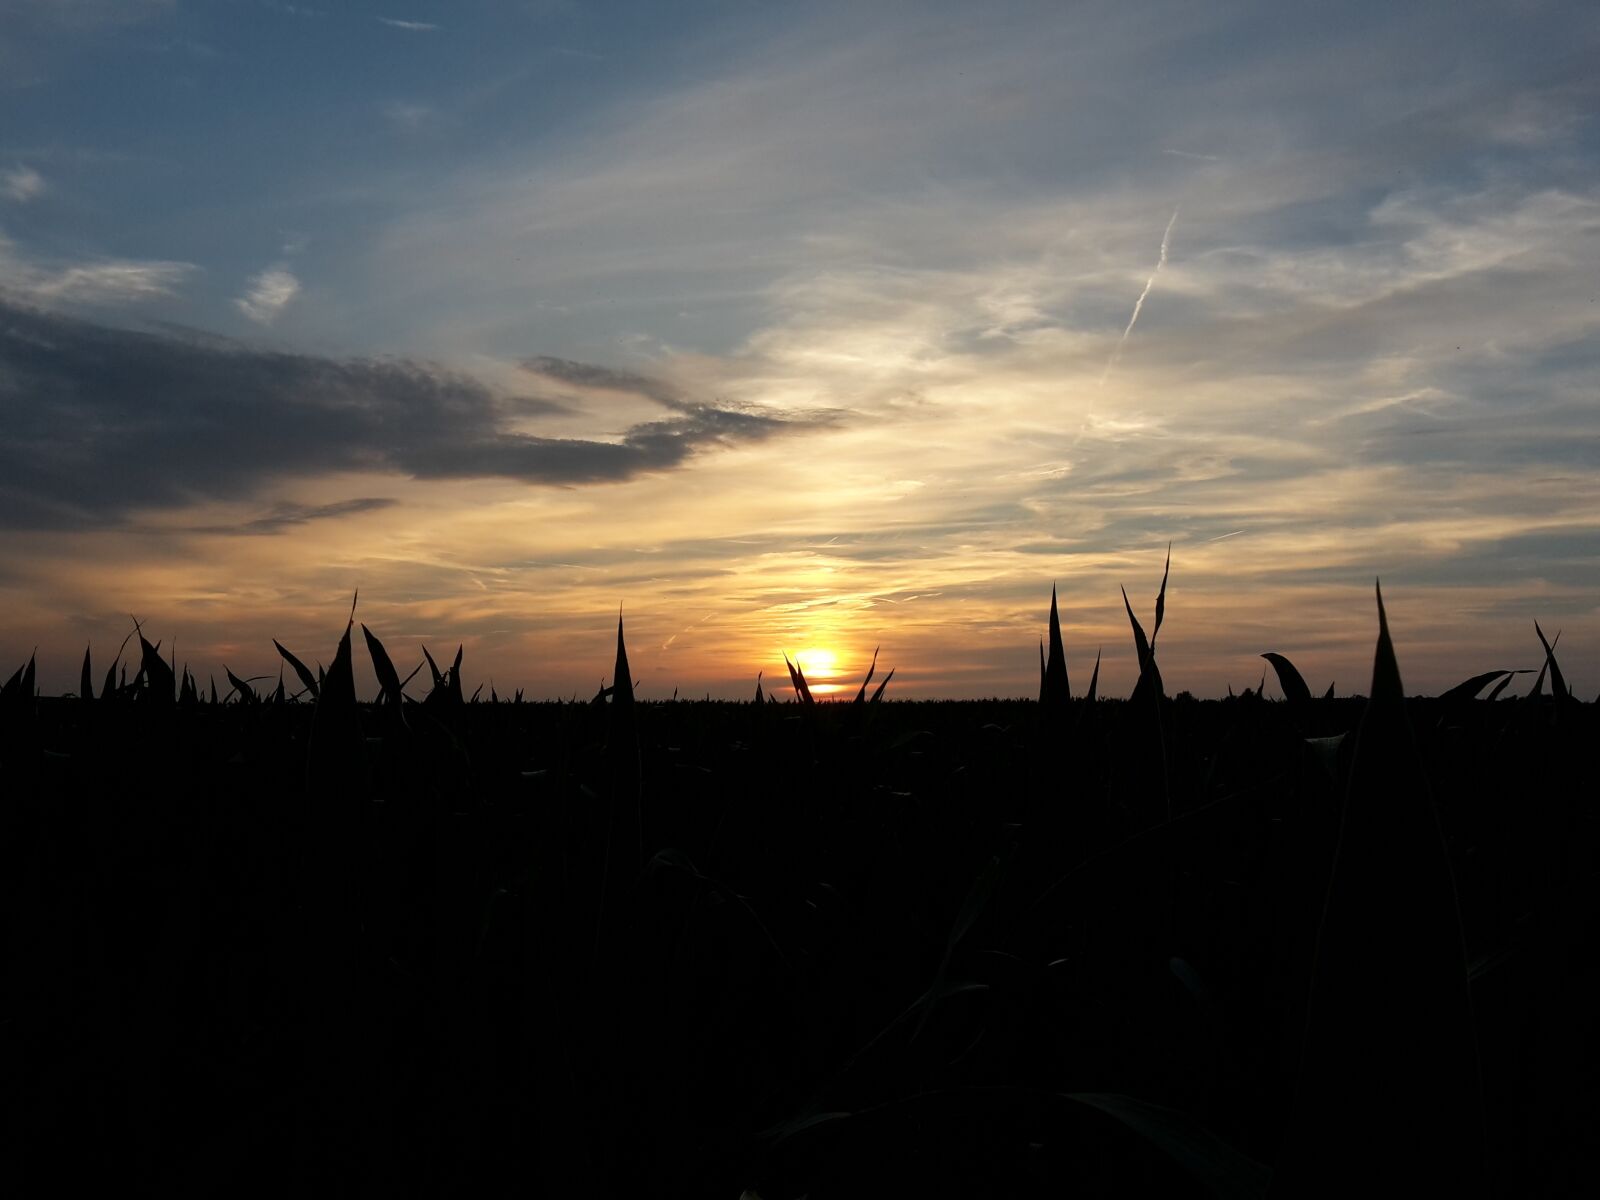 Samsung Galaxy S5 Mini sample photo. Sun, sunset, field photography